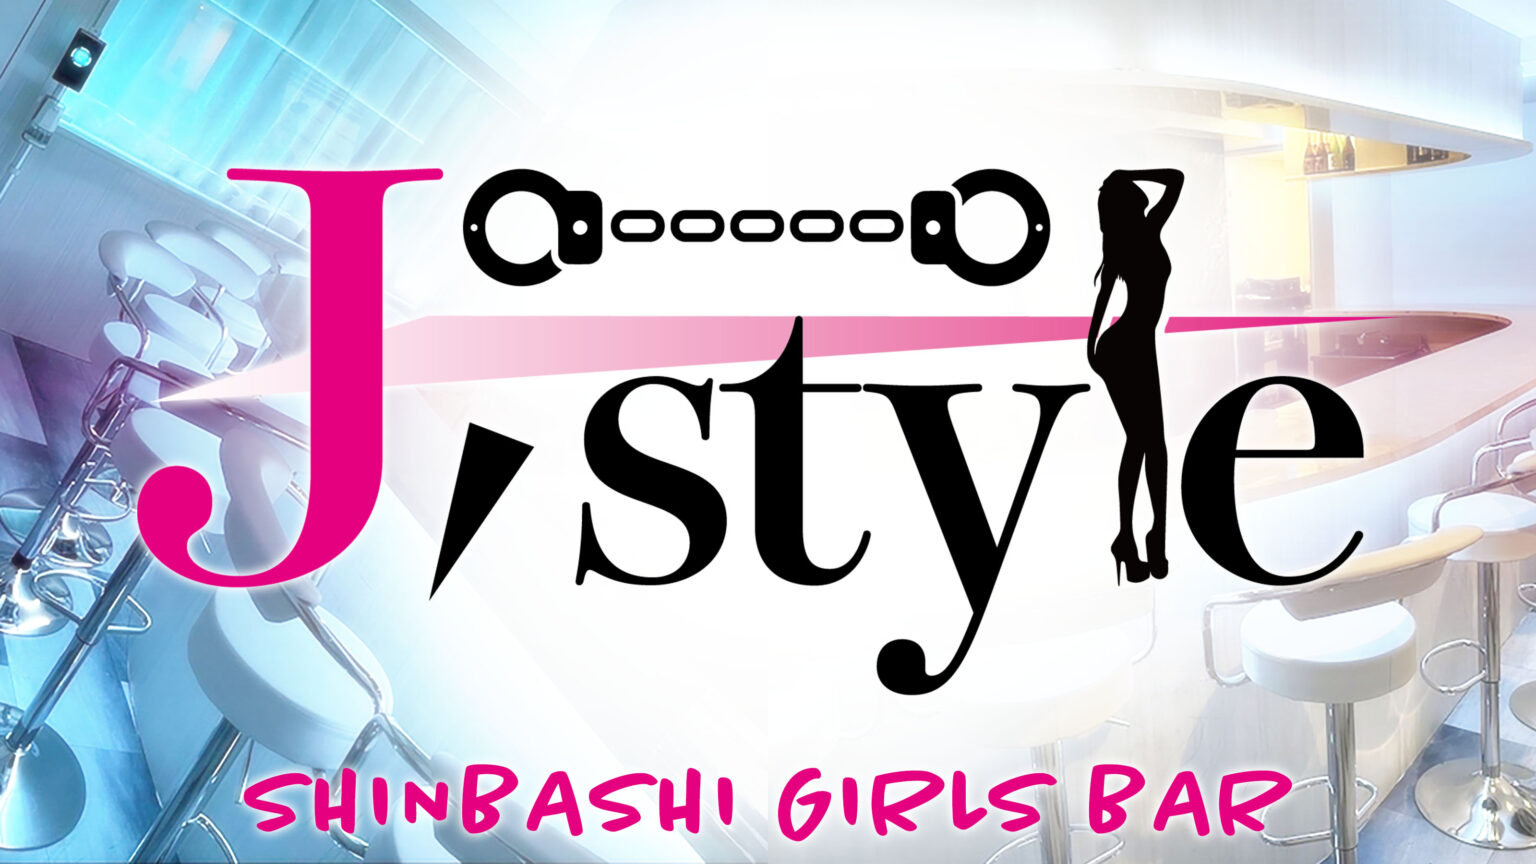 フロント - 新橋 ガールズバー ジェイスタイル Girls Bar J Style